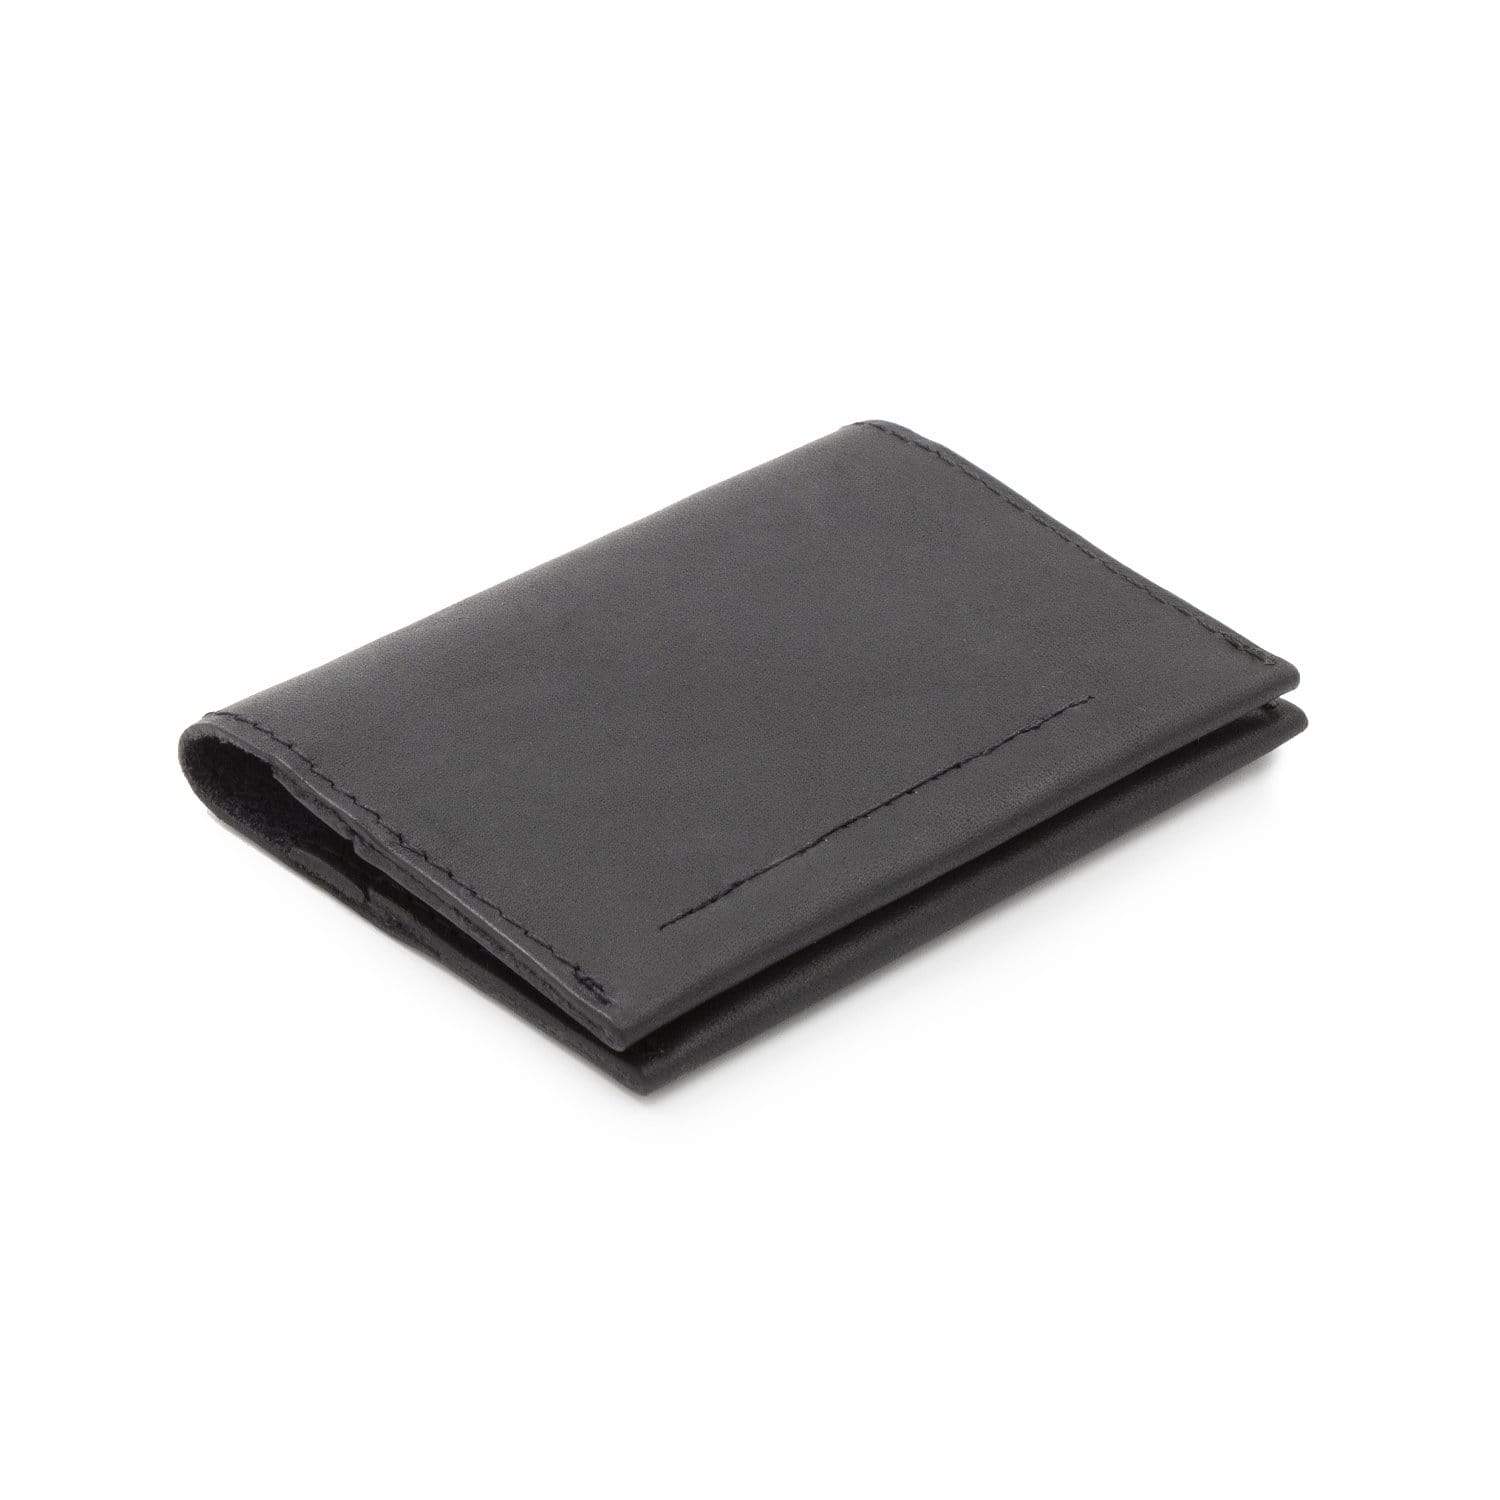 Karakoram2 Smart Slide Card Holder Wallet  RFID Slim Leather  Credit/Business Card Wallet